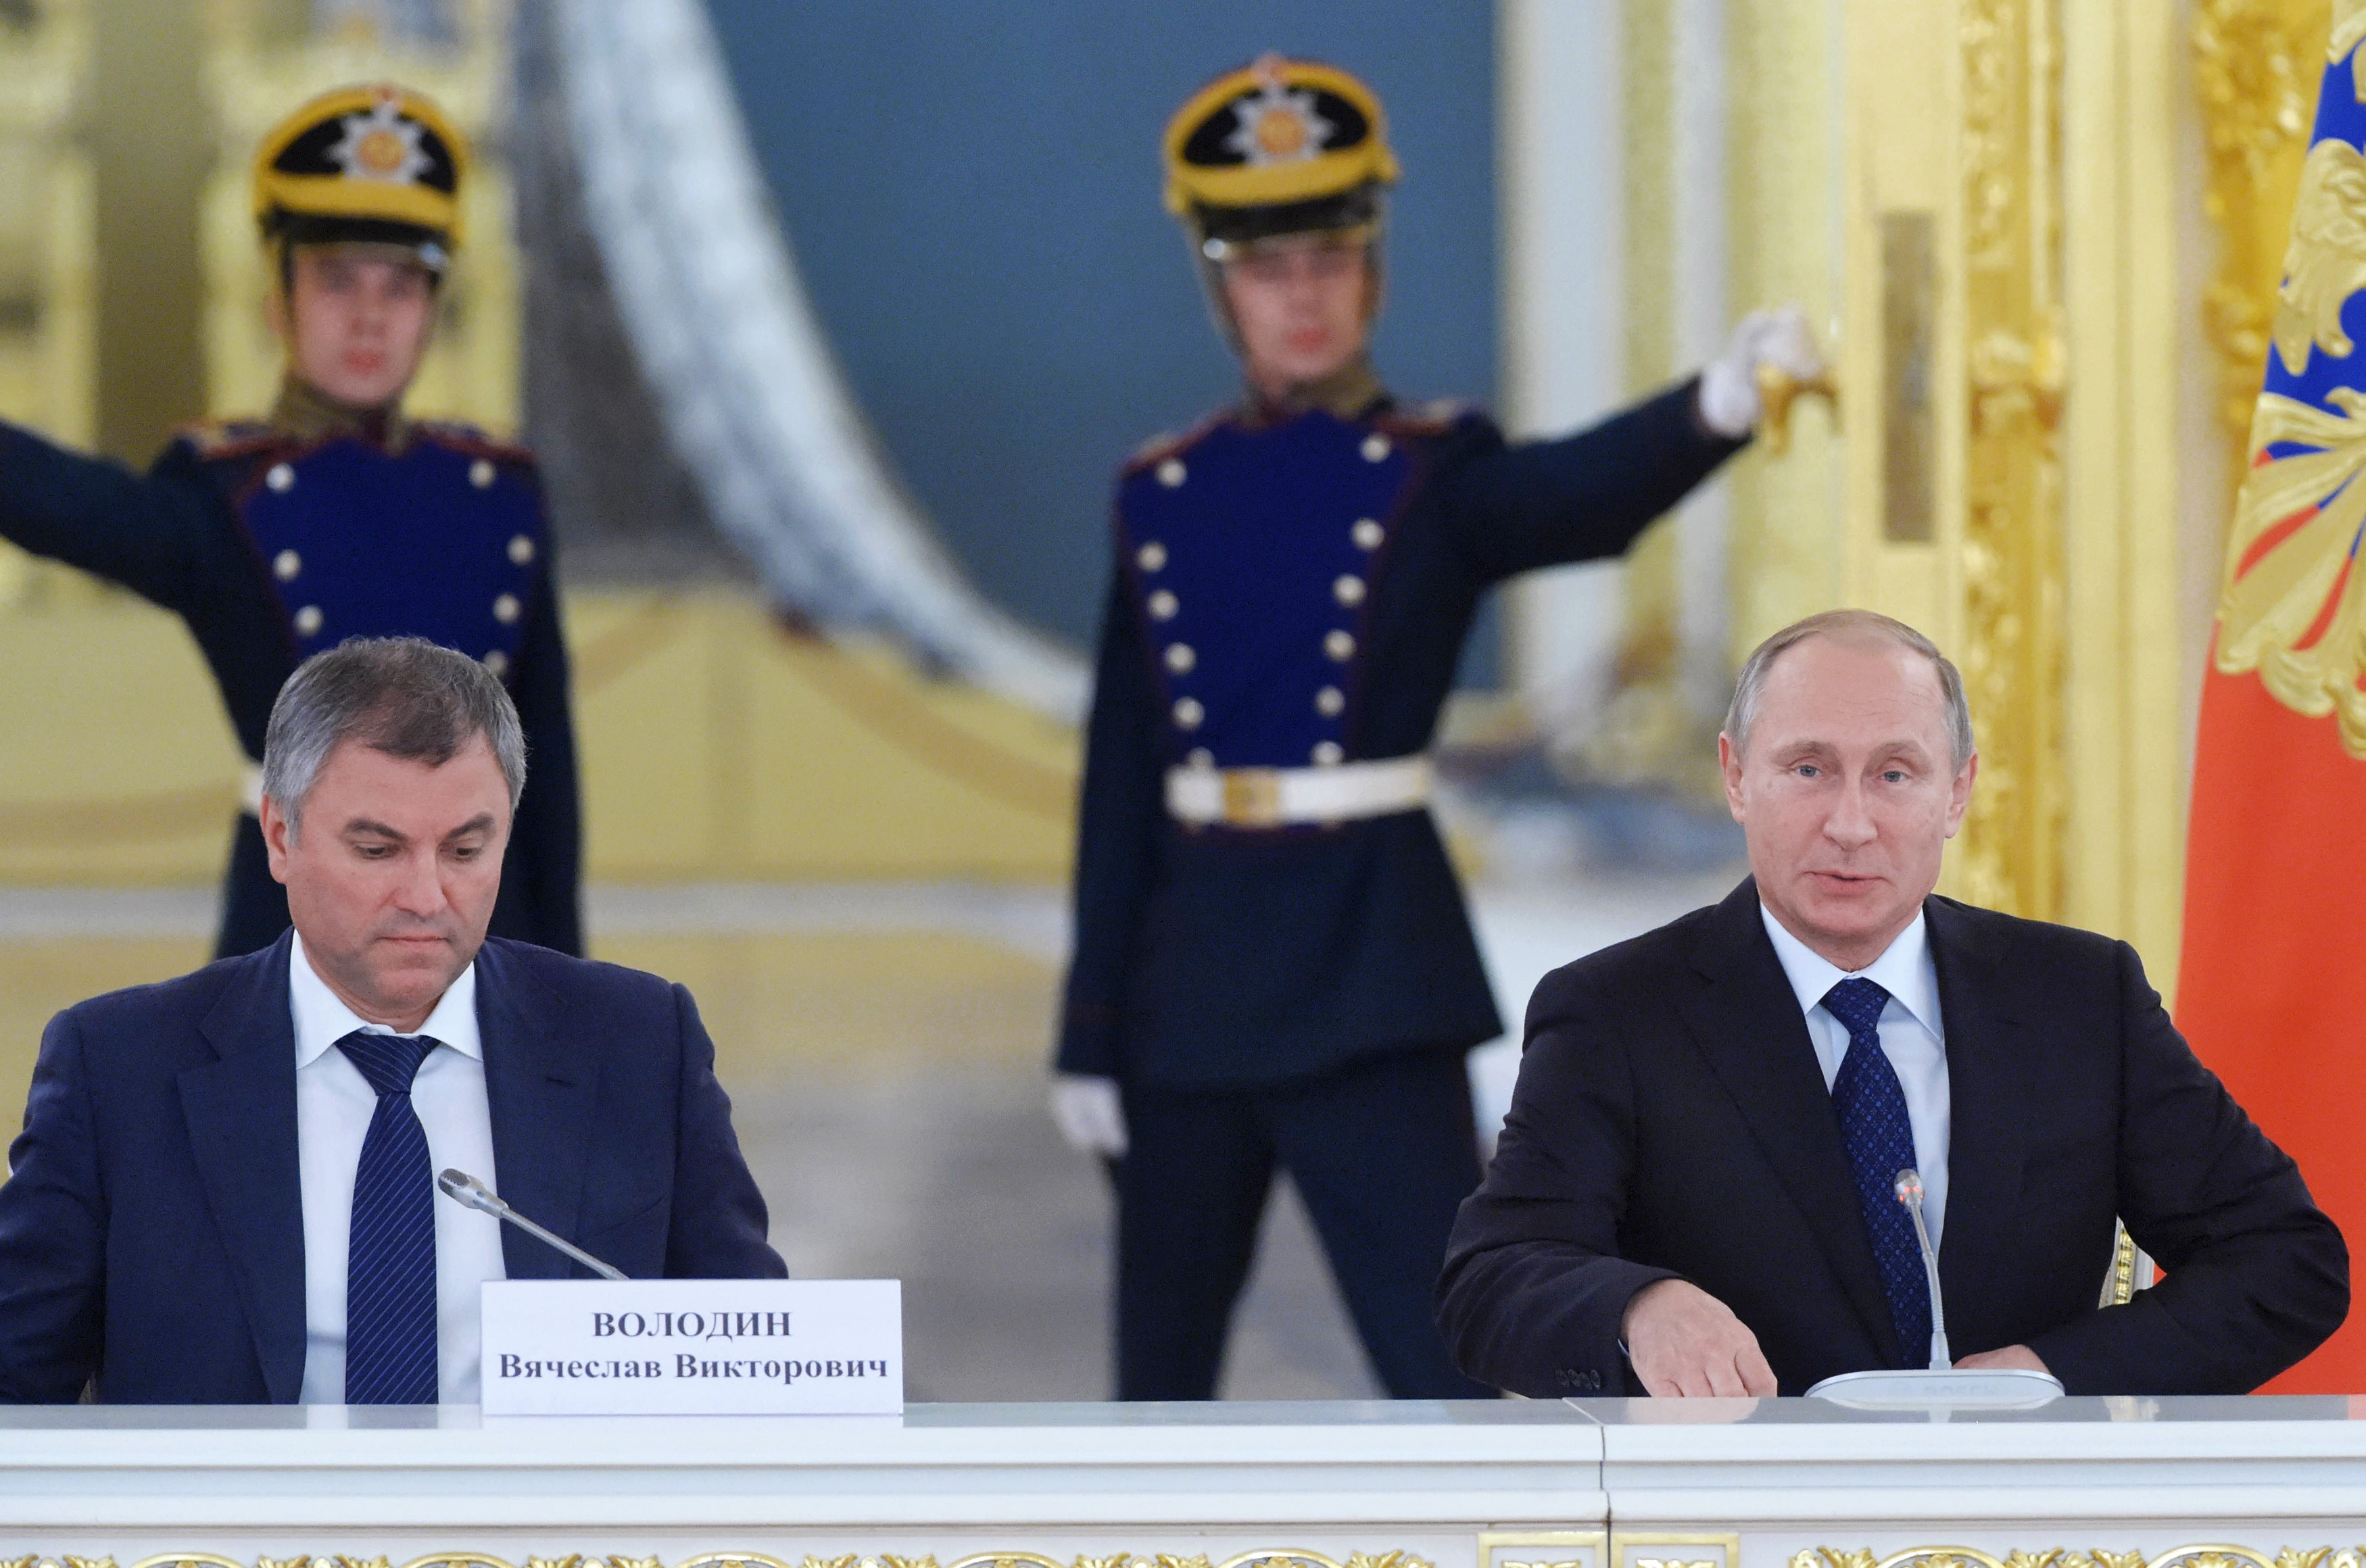 Wolodin an der Seite von Wladimir Putin während einer Sitzung des Menschenrechtsrates beim russischen Präsidenten 2015 -  Foto © Dimitri Asarow/Kommersant